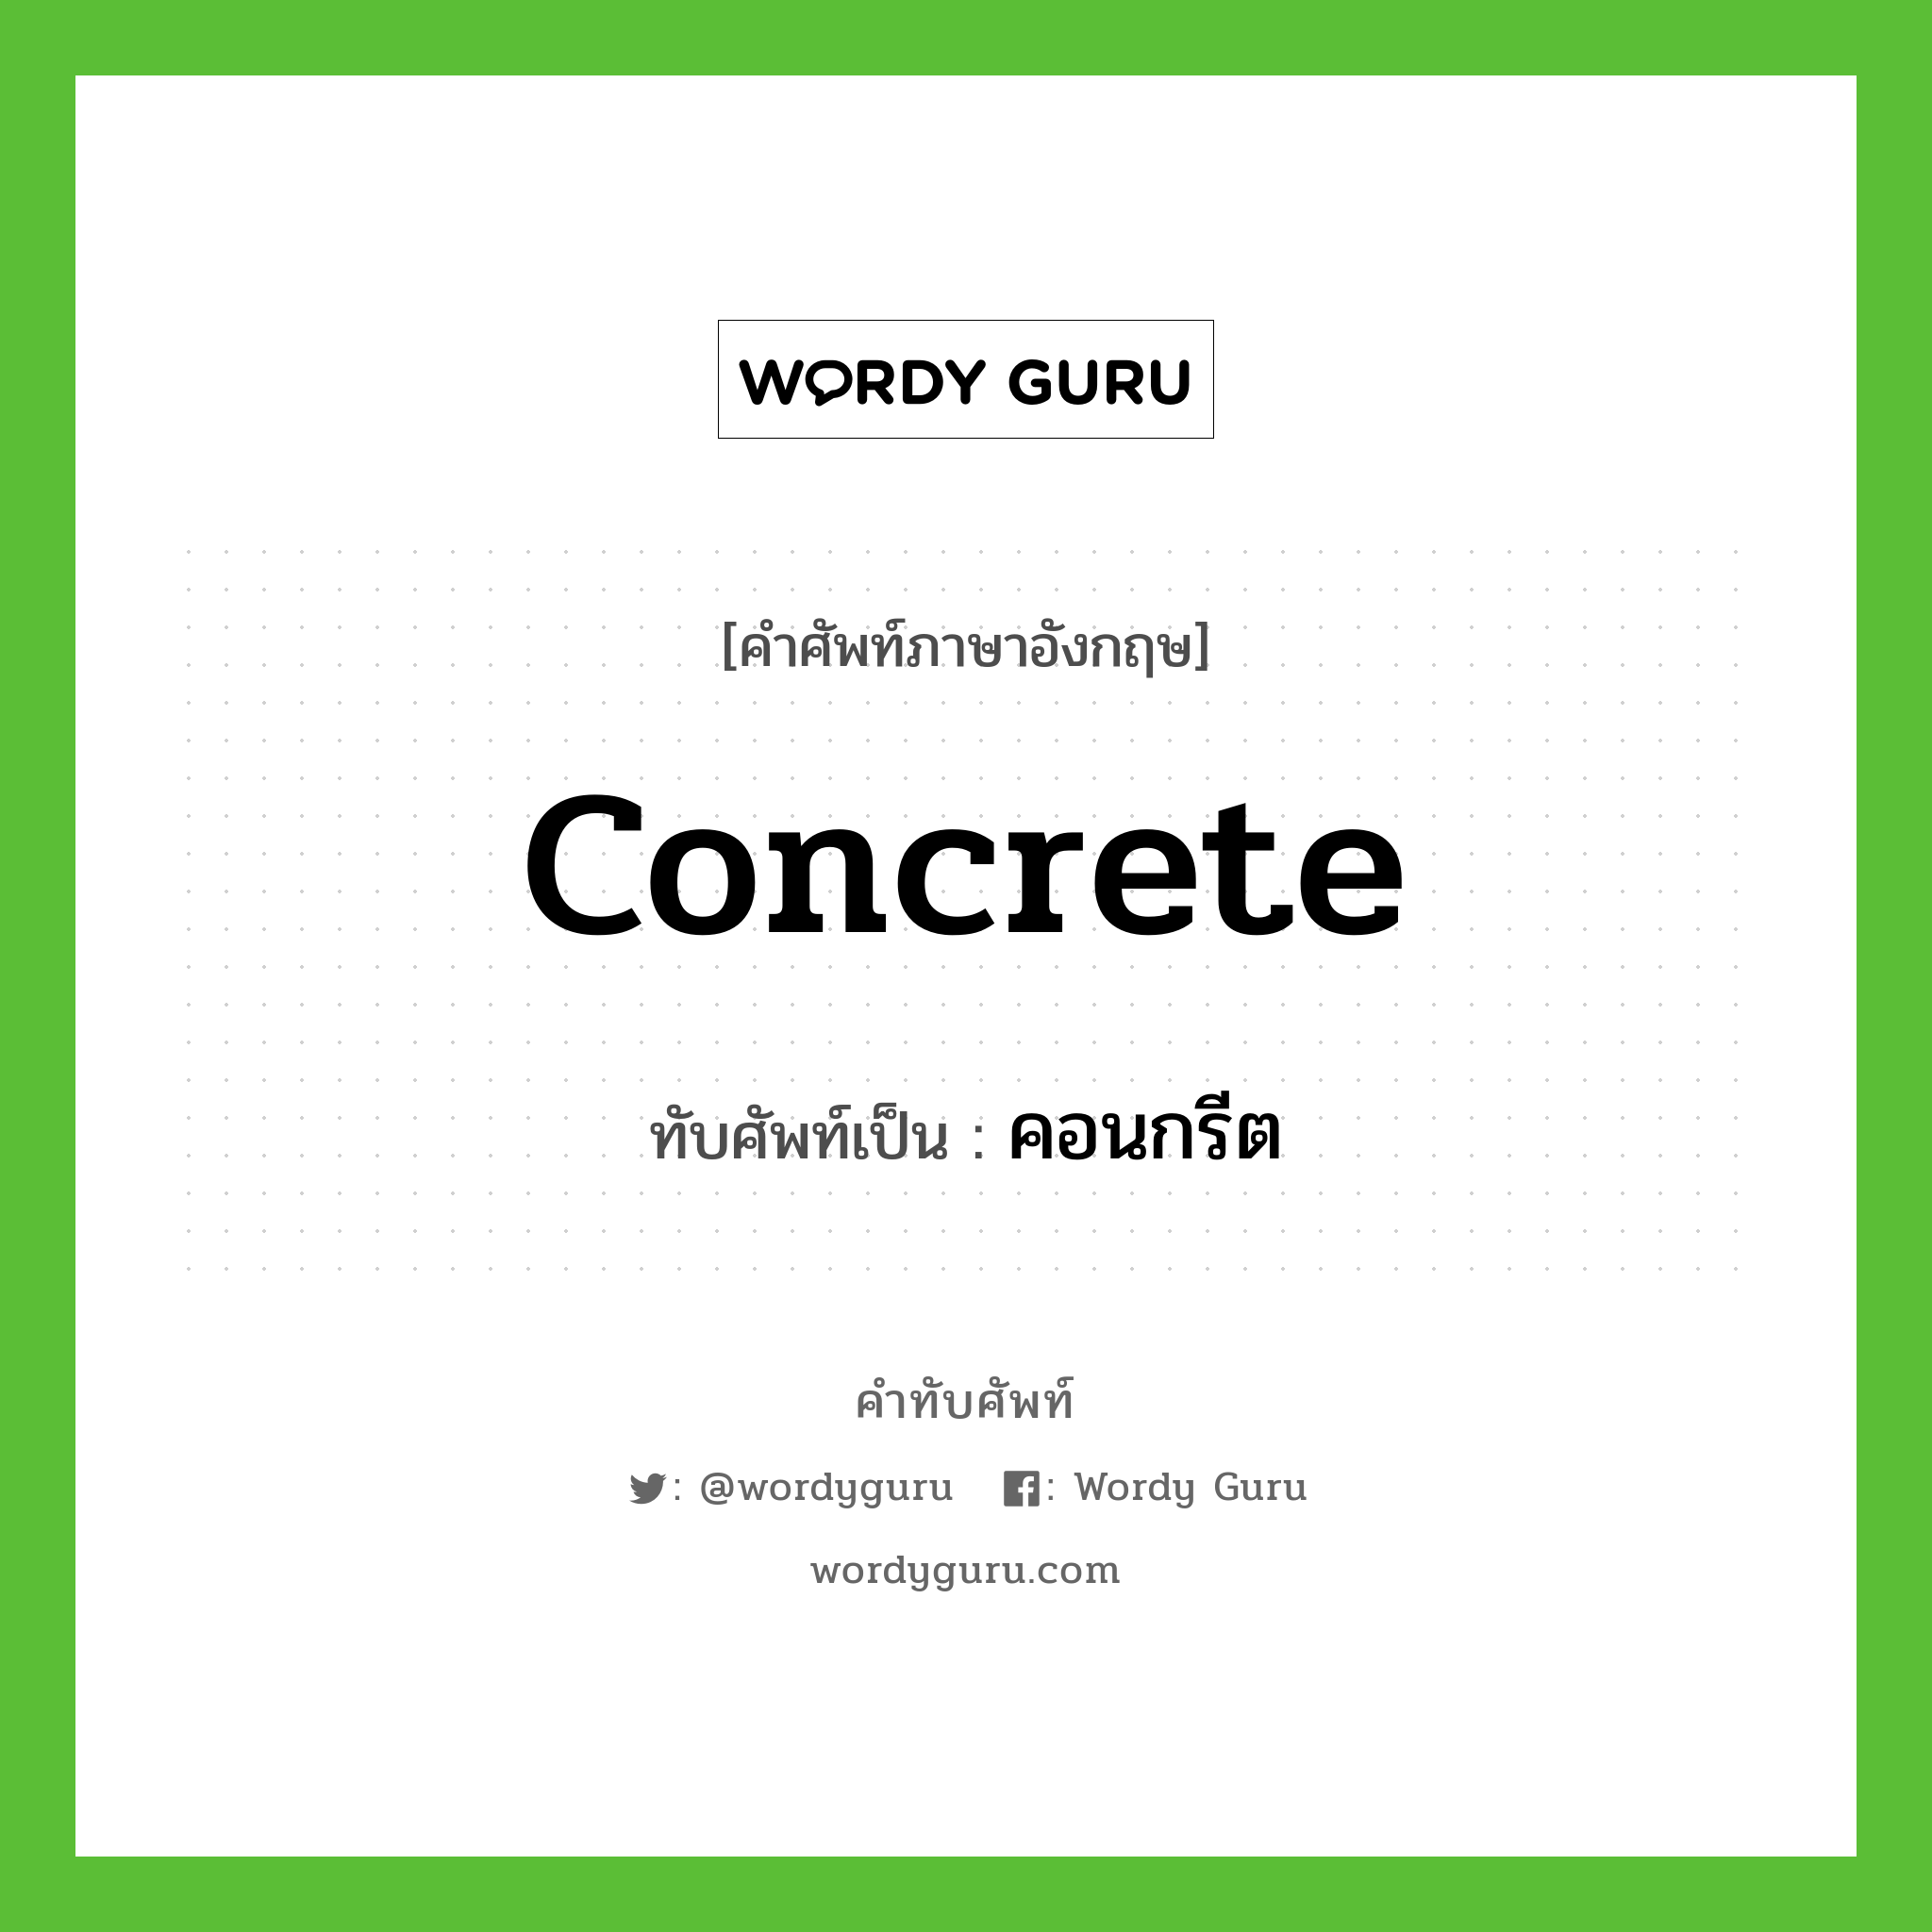 concrete เขียนเป็นคำไทยว่าอะไร?, คำศัพท์ภาษาอังกฤษ concrete ทับศัพท์เป็น คอนกรีต